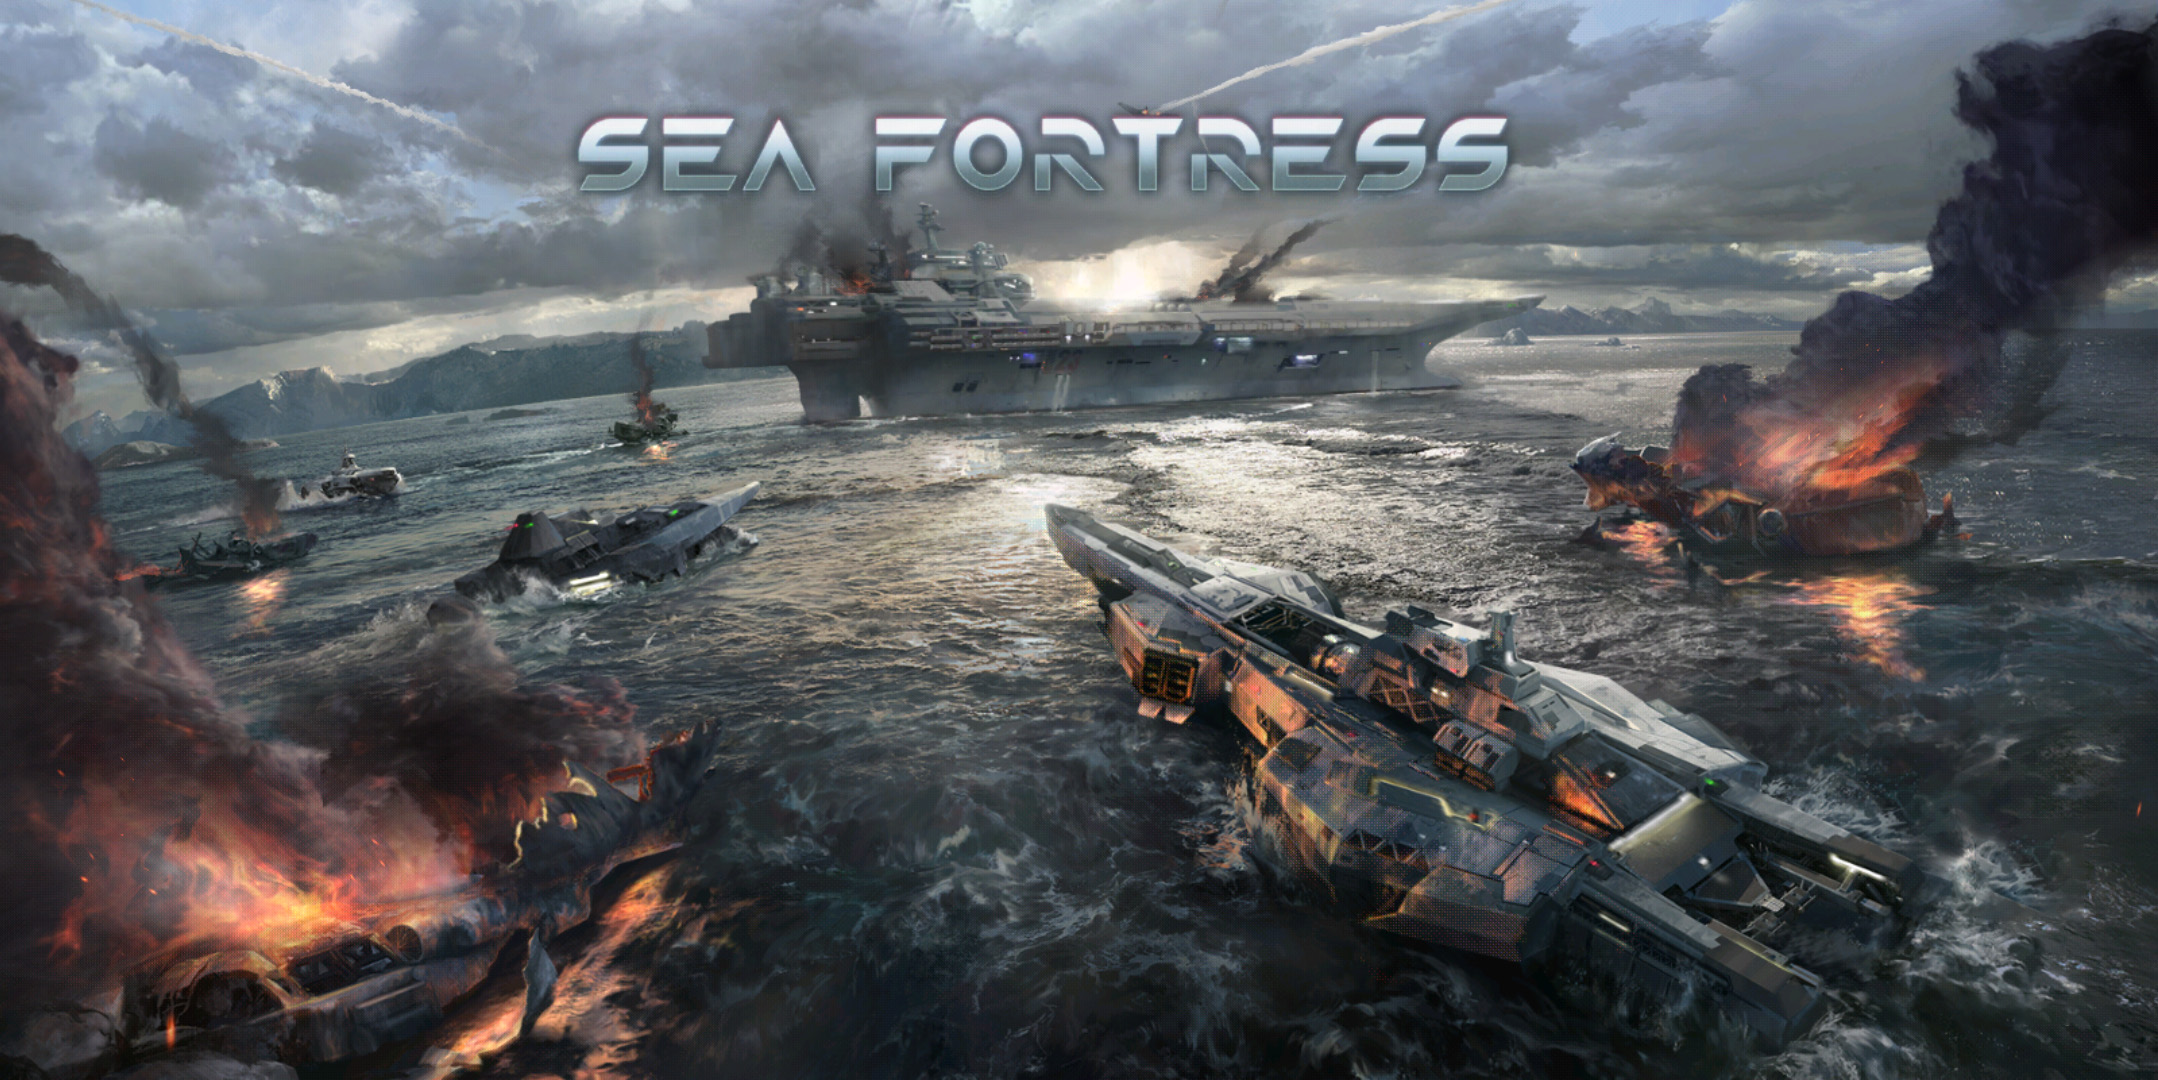 Chơi thử Sea Fortress – Hải chiến: game mobile chiến thuật mới ra lò